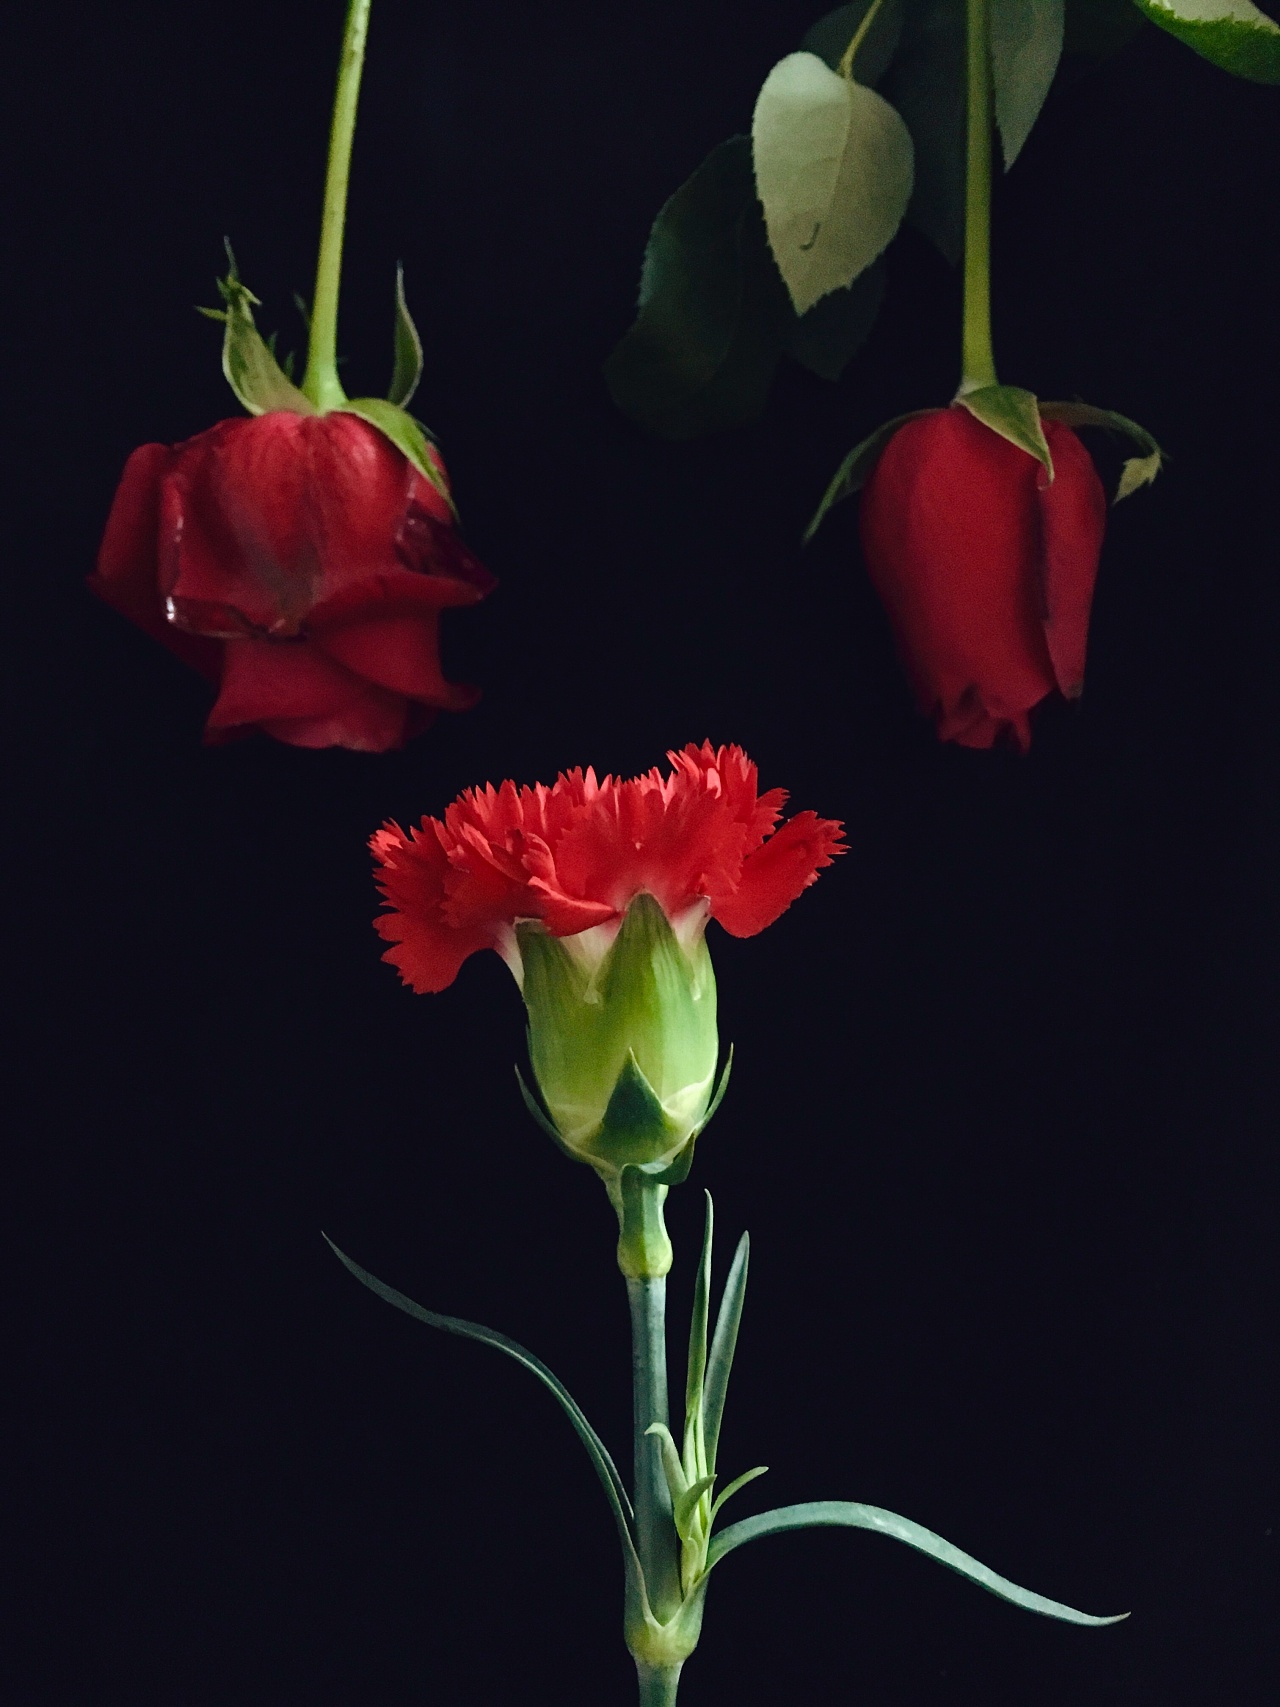 夏日里的红玫瑰[原创] - 绝美图库 - 华声论坛